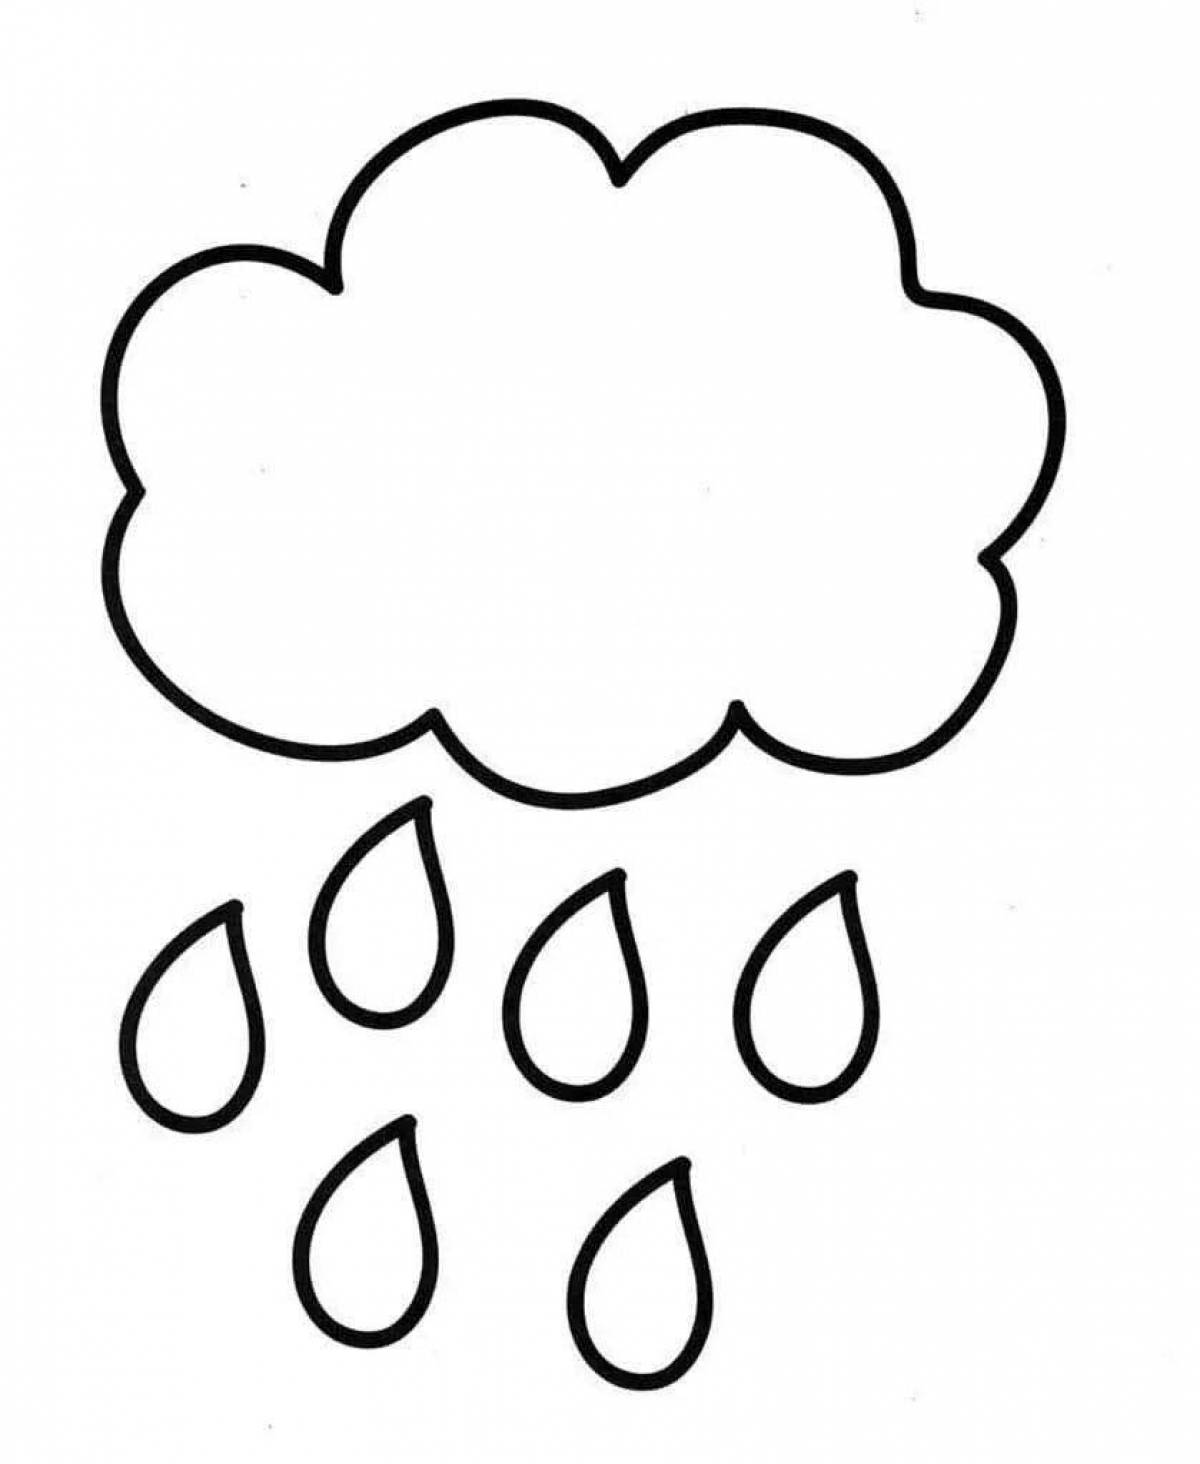 Тучка дождь Изображения – скачать бесплатно на Freepik